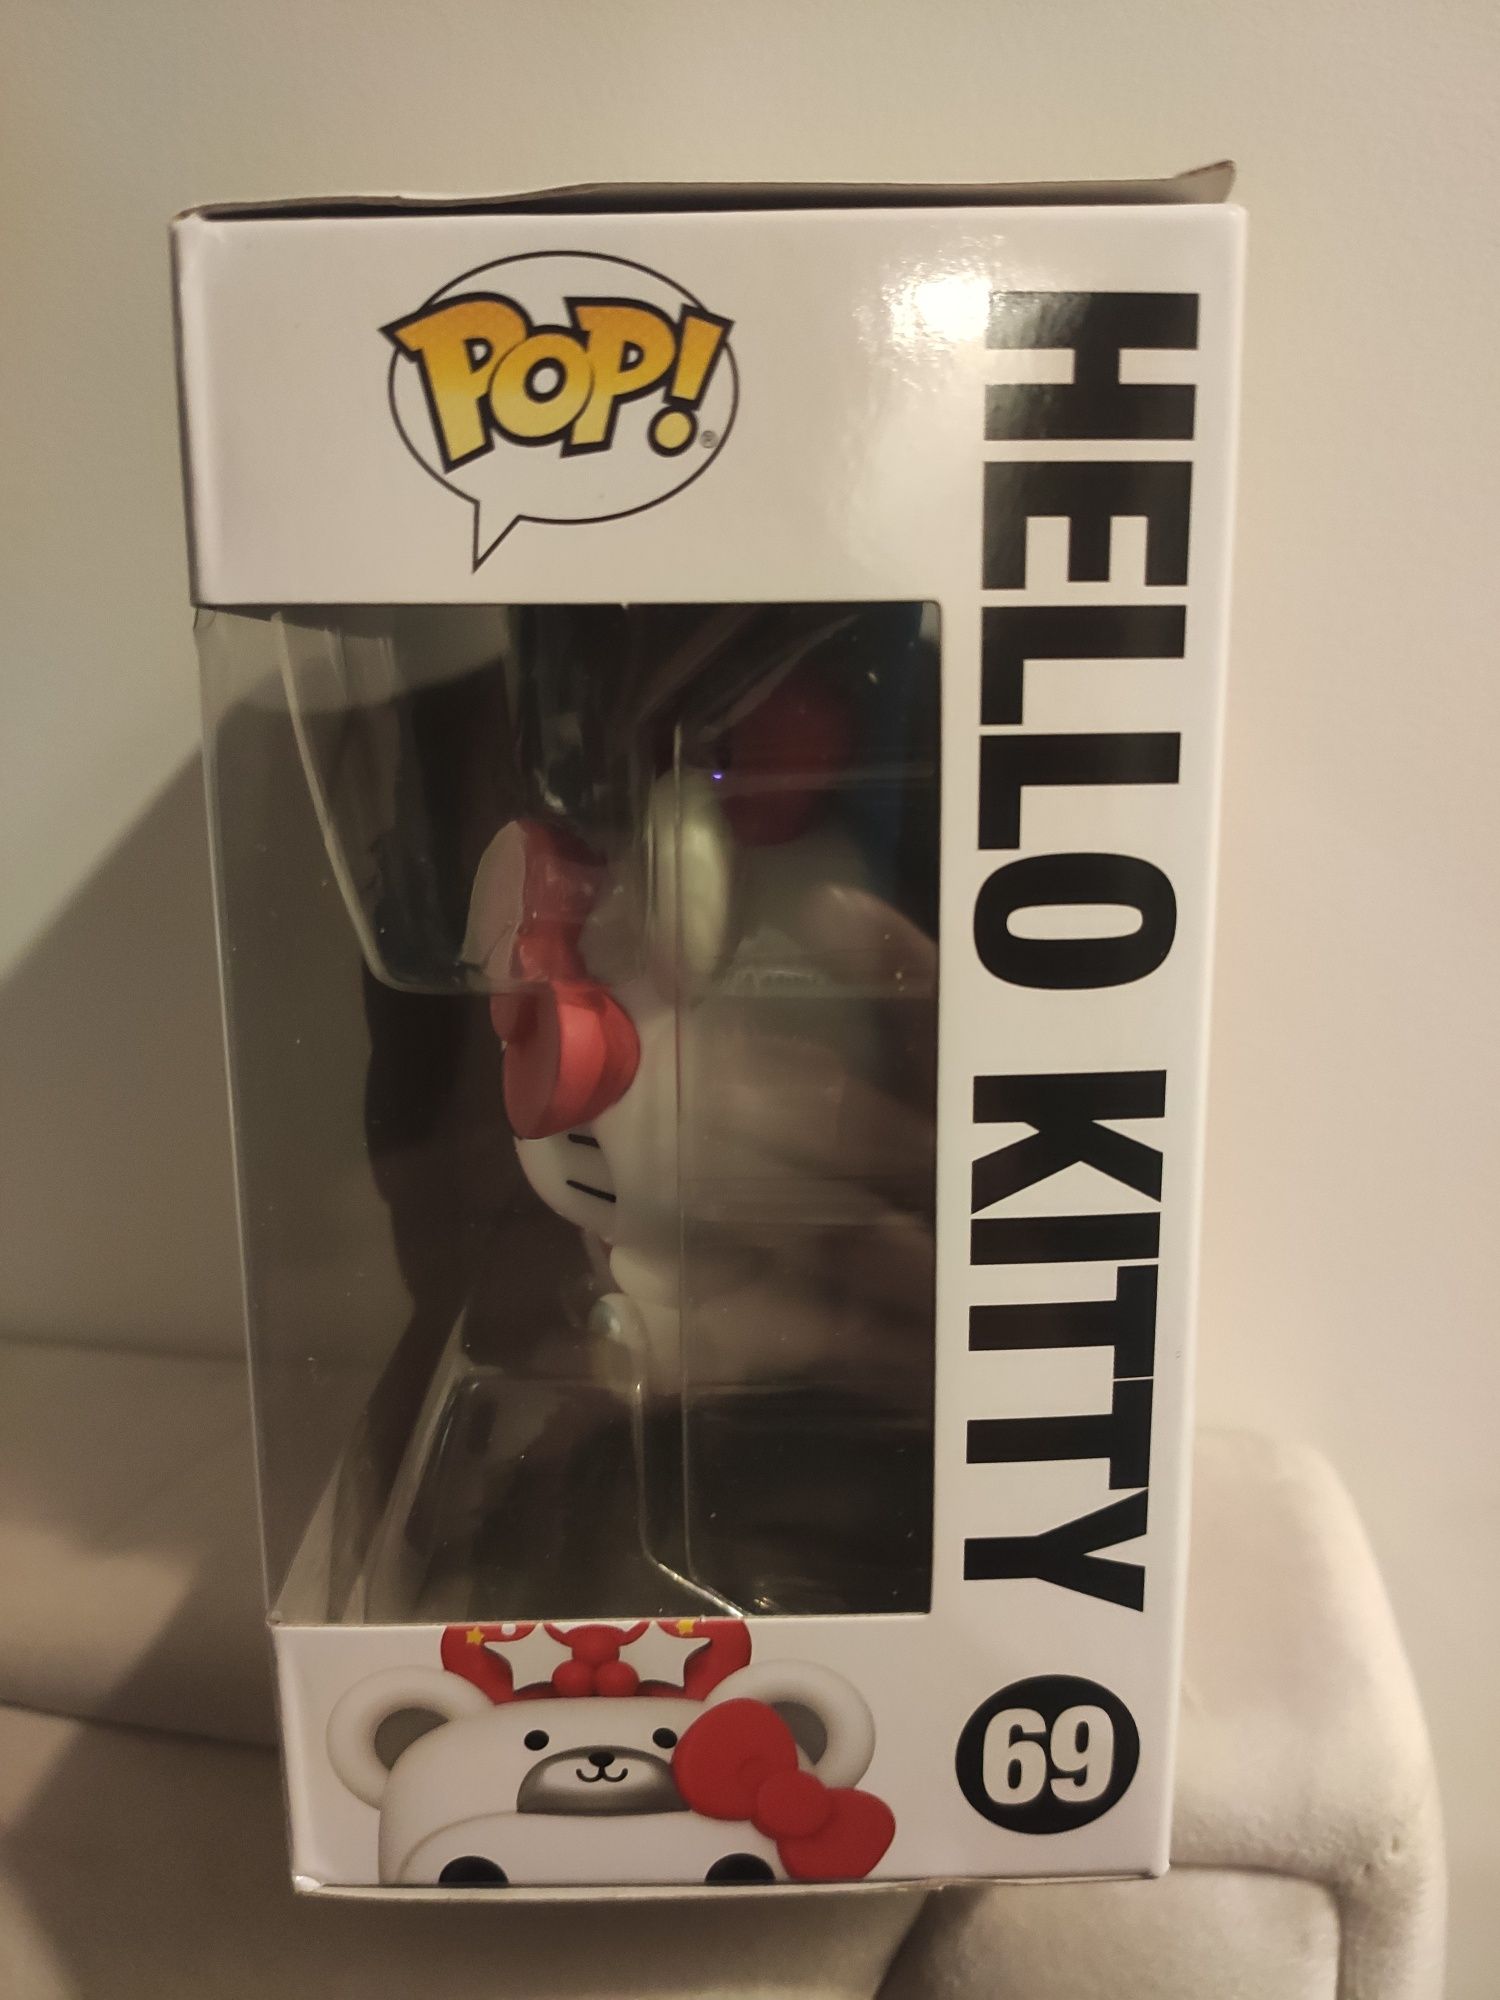 Funko Pop Hello Kitty 69